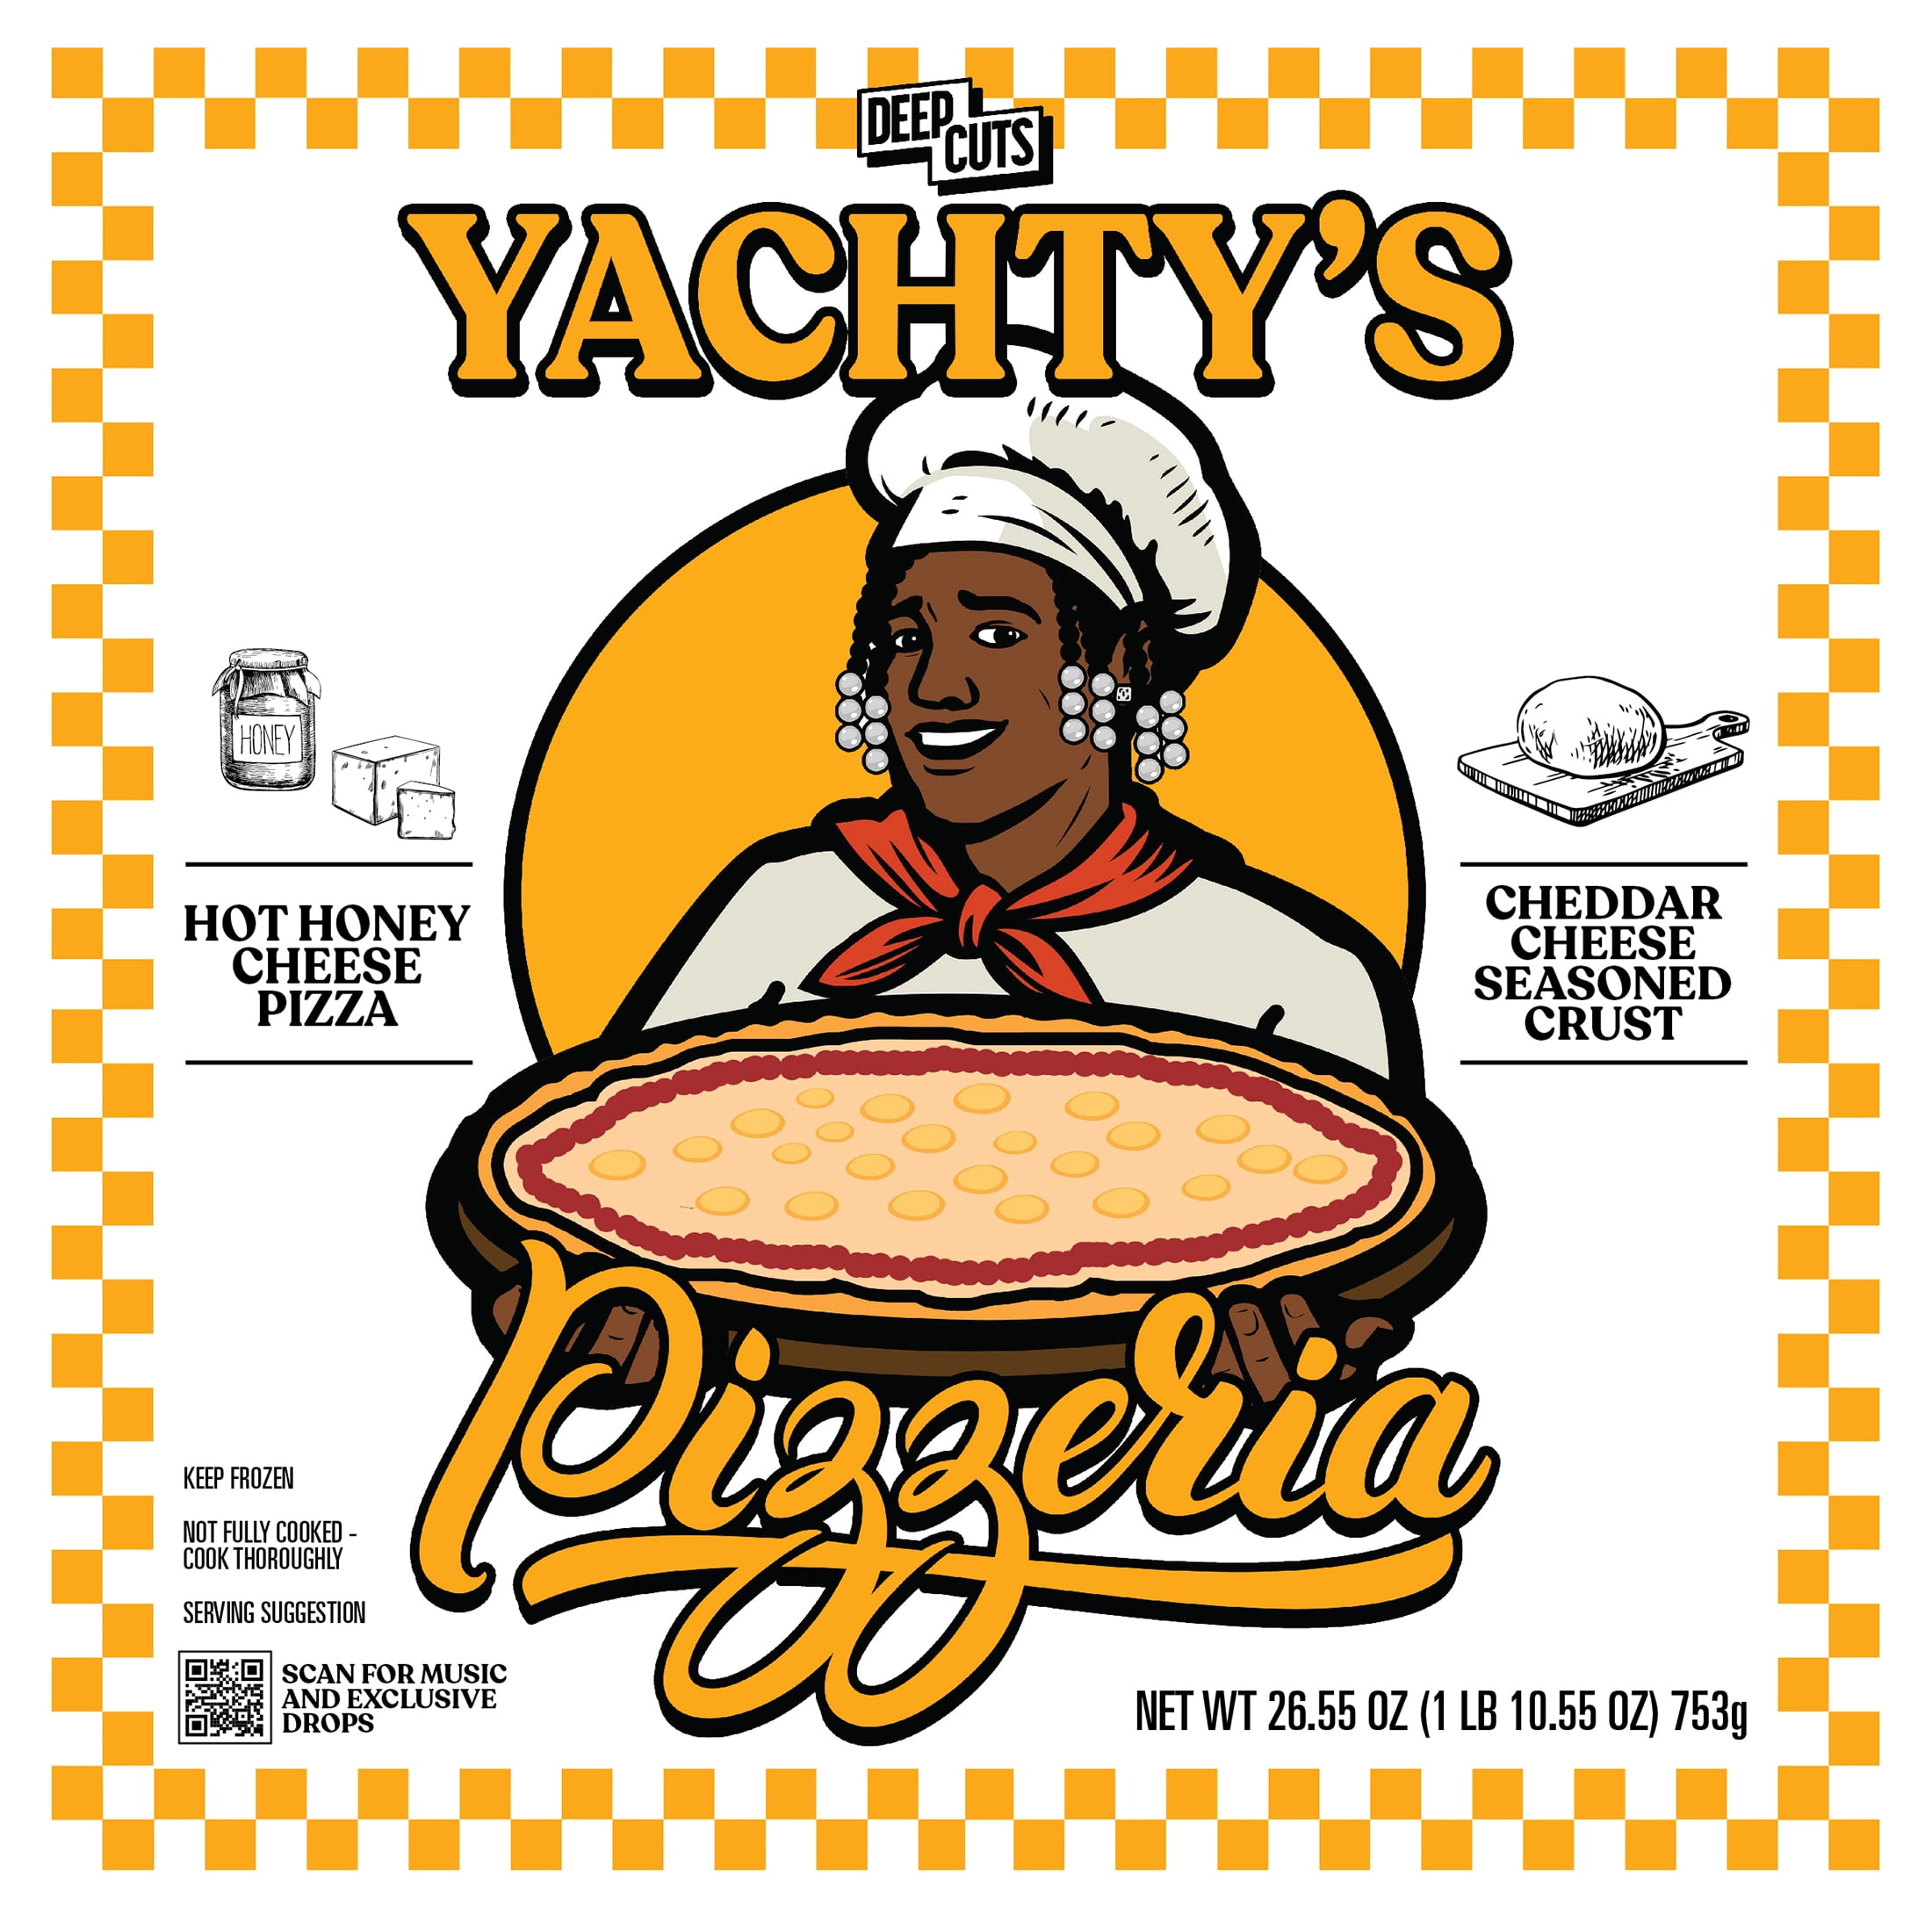 yachty's pizzeria walmart